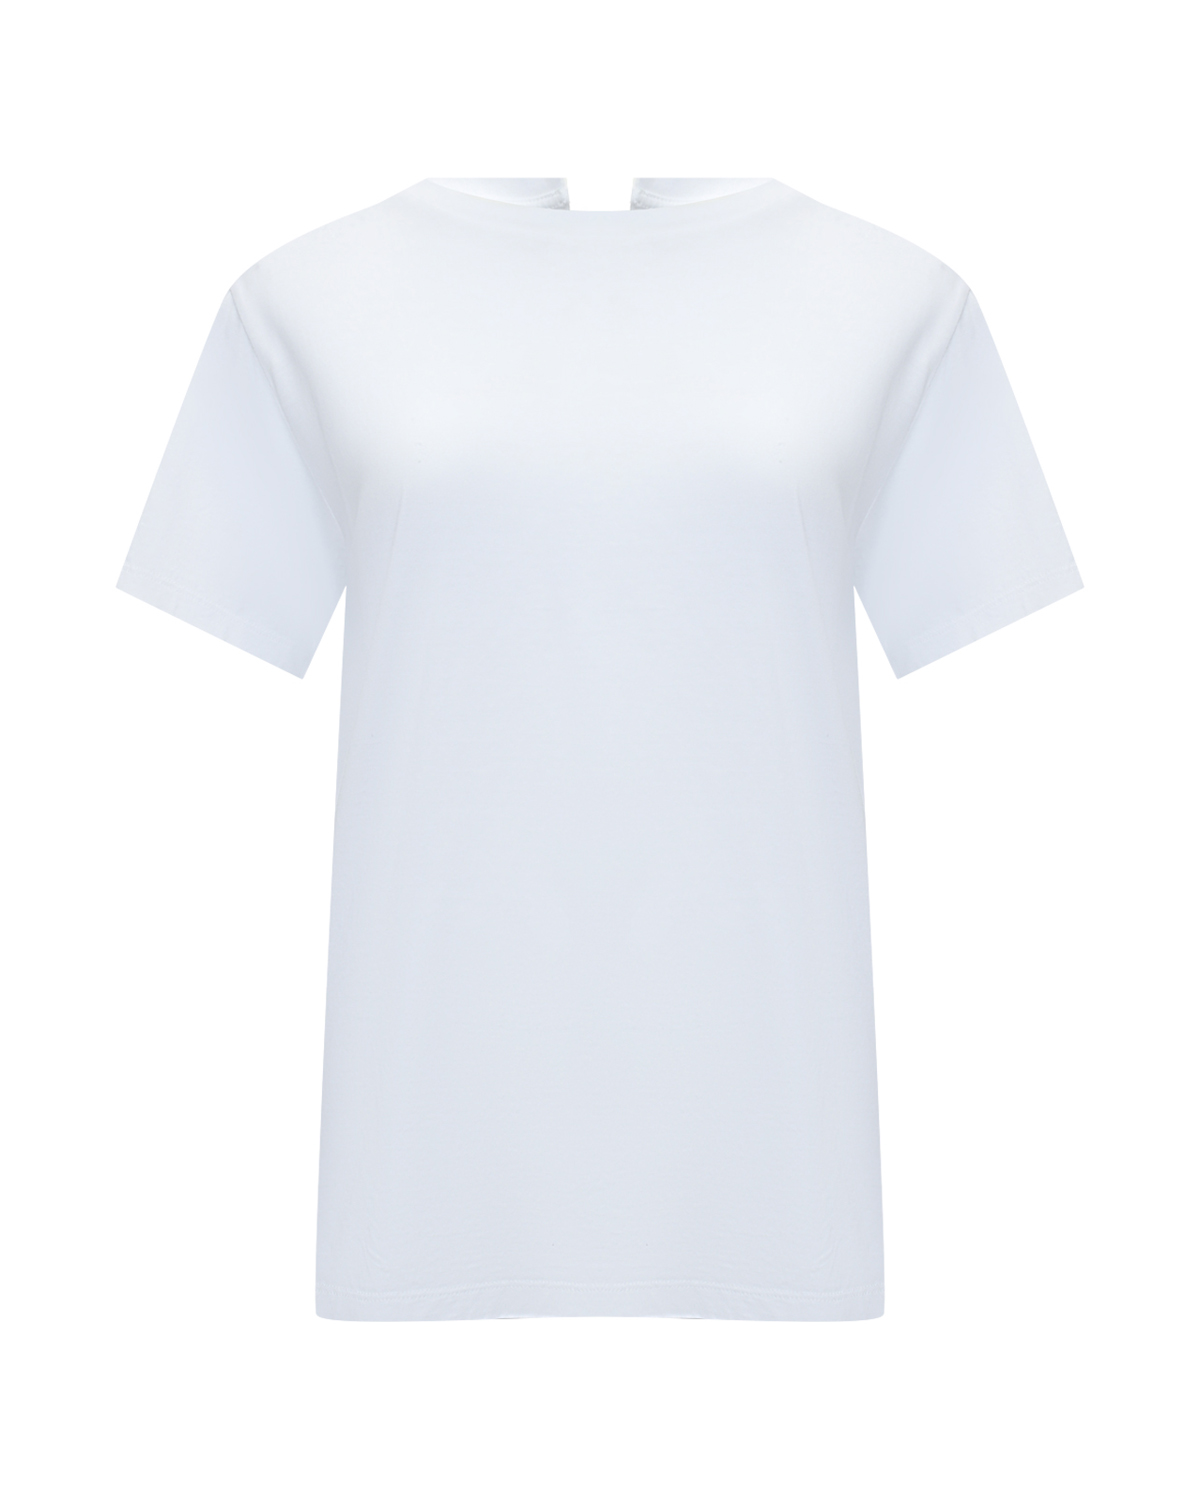 Футболка с разрезом на спине, белая MM6 Maison Margiela футболка базовая белая с лого mm6 maison margiela